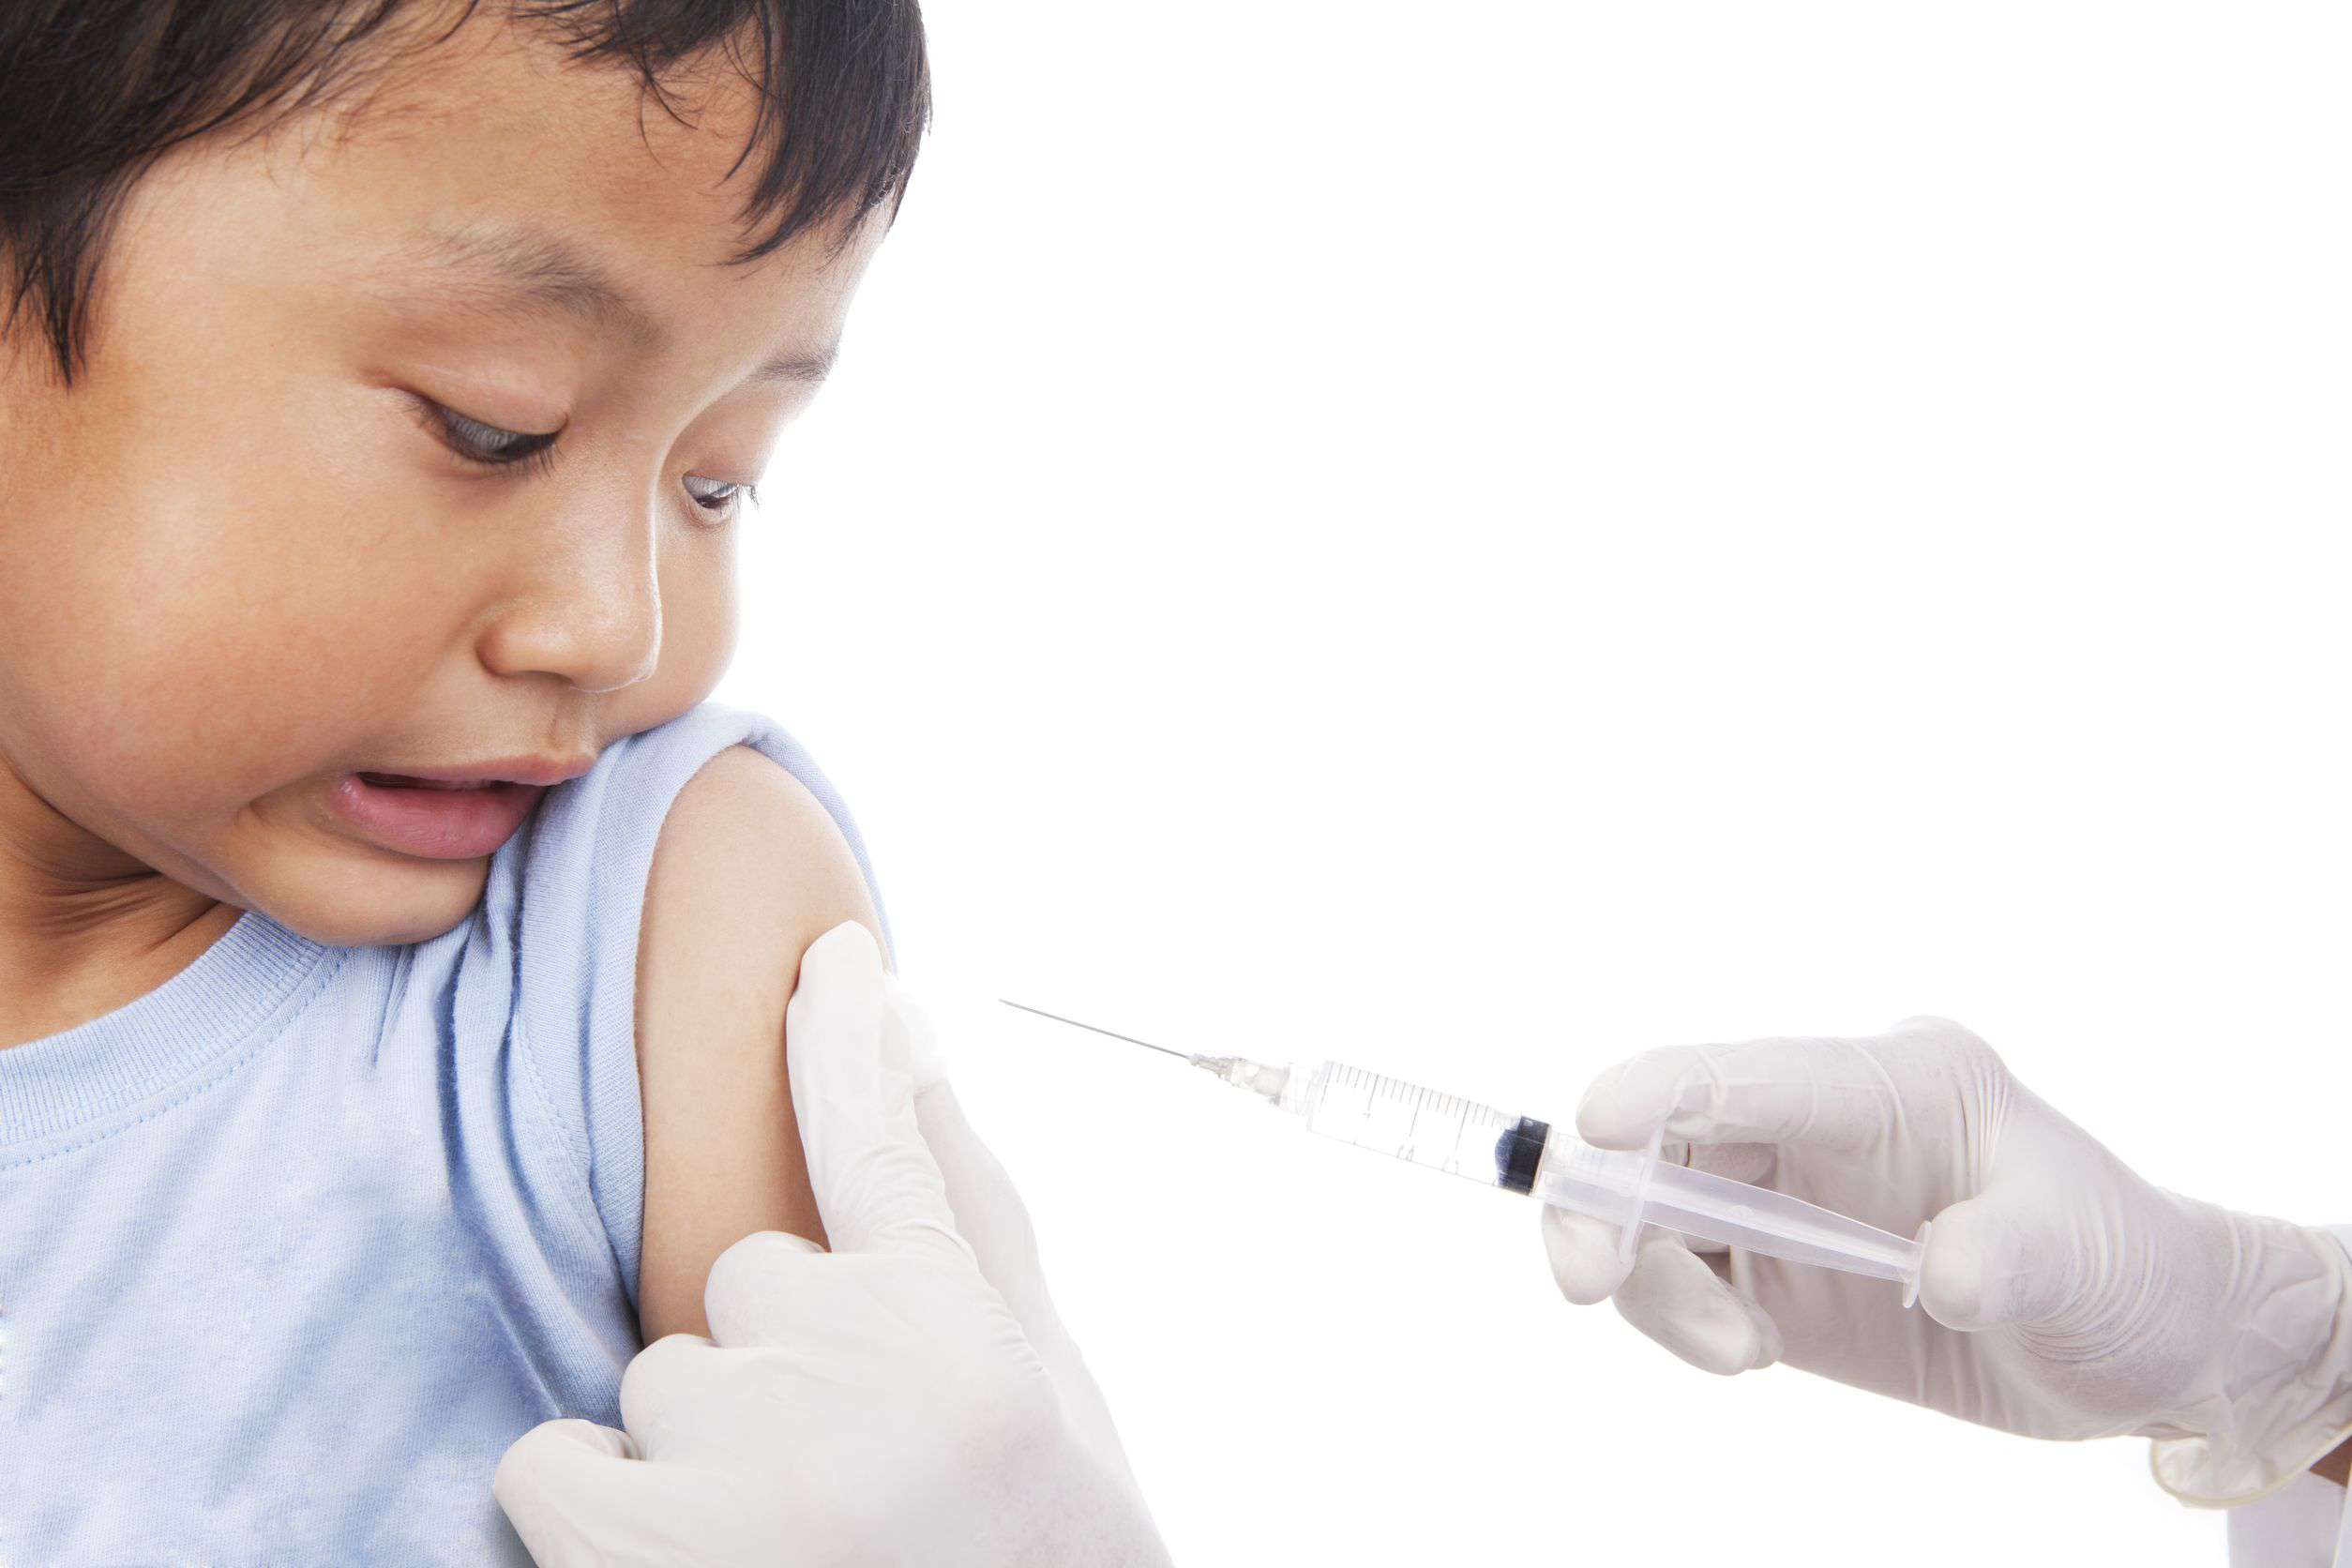 Прививки дети плачут. Вакцинация детей. Доктор с уколом для детей. Детские врачи делают уколы детям. Мальчику делают прививку арт.